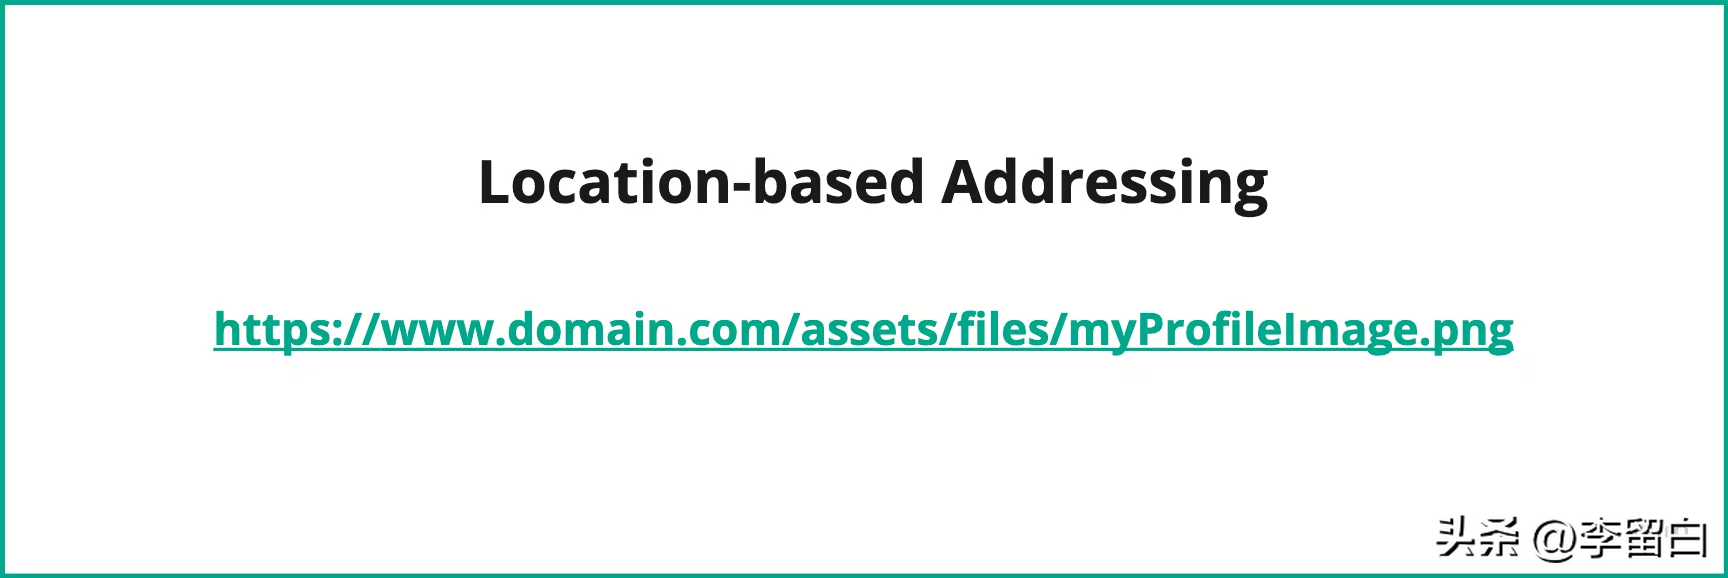 如何使用 IPFS 在区块链上存储文件？